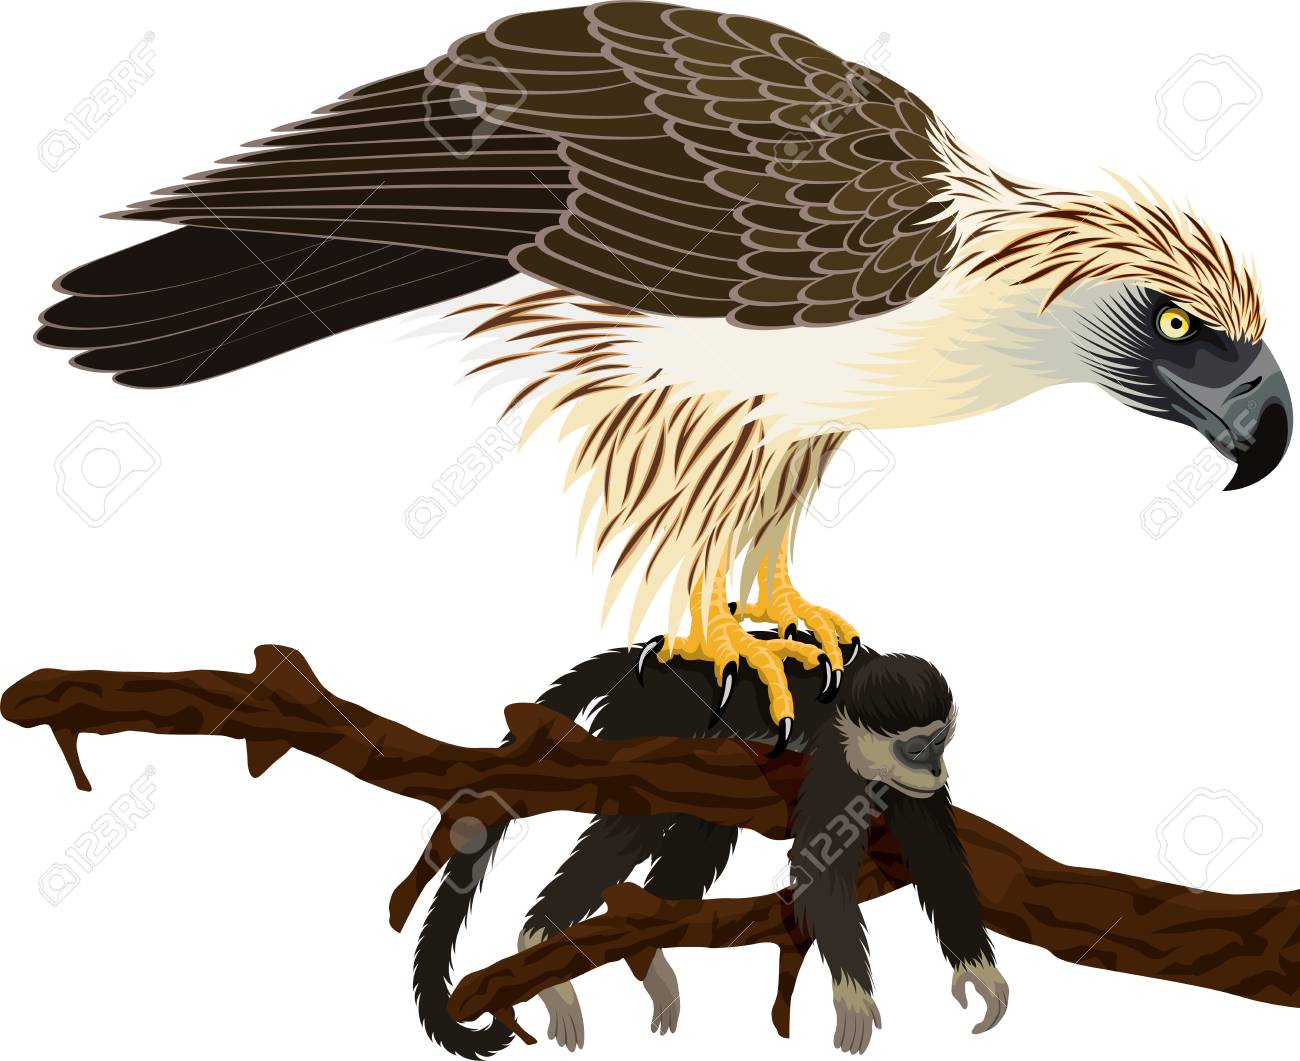 eagles clipart monkey eating eagle